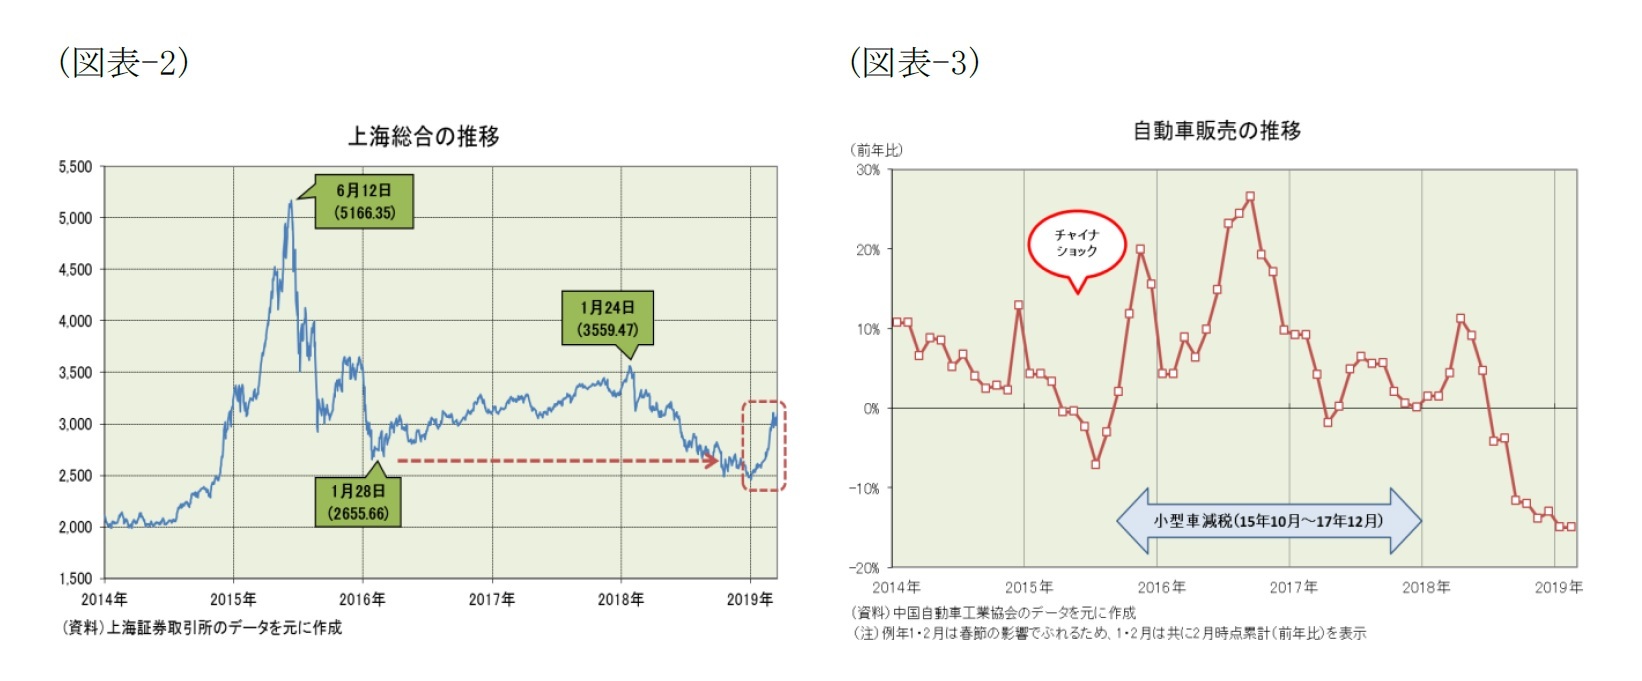 (図表-2)上海総合の推移/(図表-3)自動車販売の推移